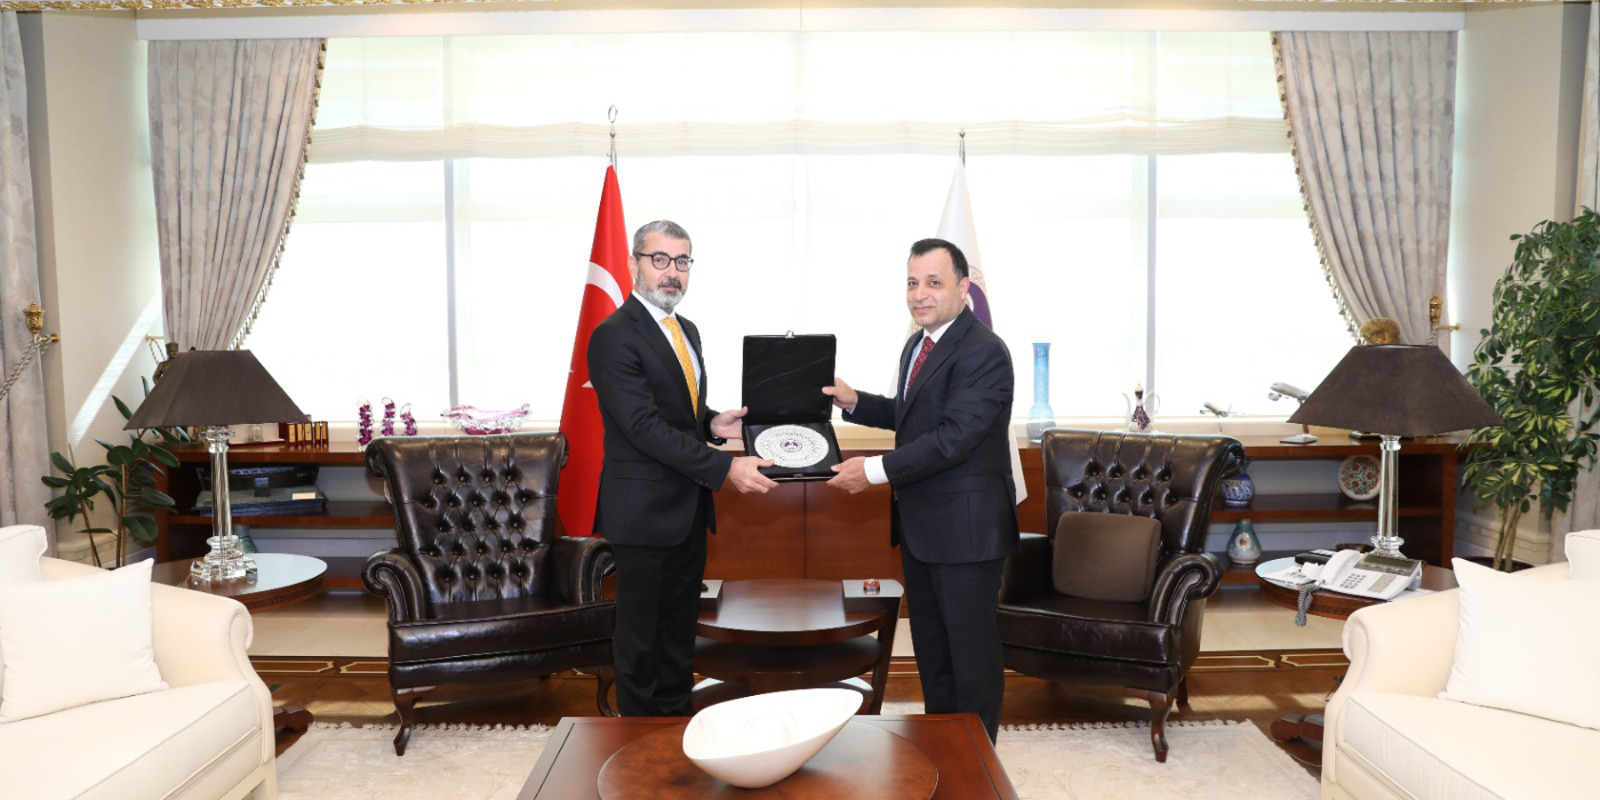 Başkanımız Prof. Dr. Muharrem Kılıç, Anayasa Mahkemesi Başkanı Prof. Dr. Zühtü Arslan'ı Ziyaret Etti